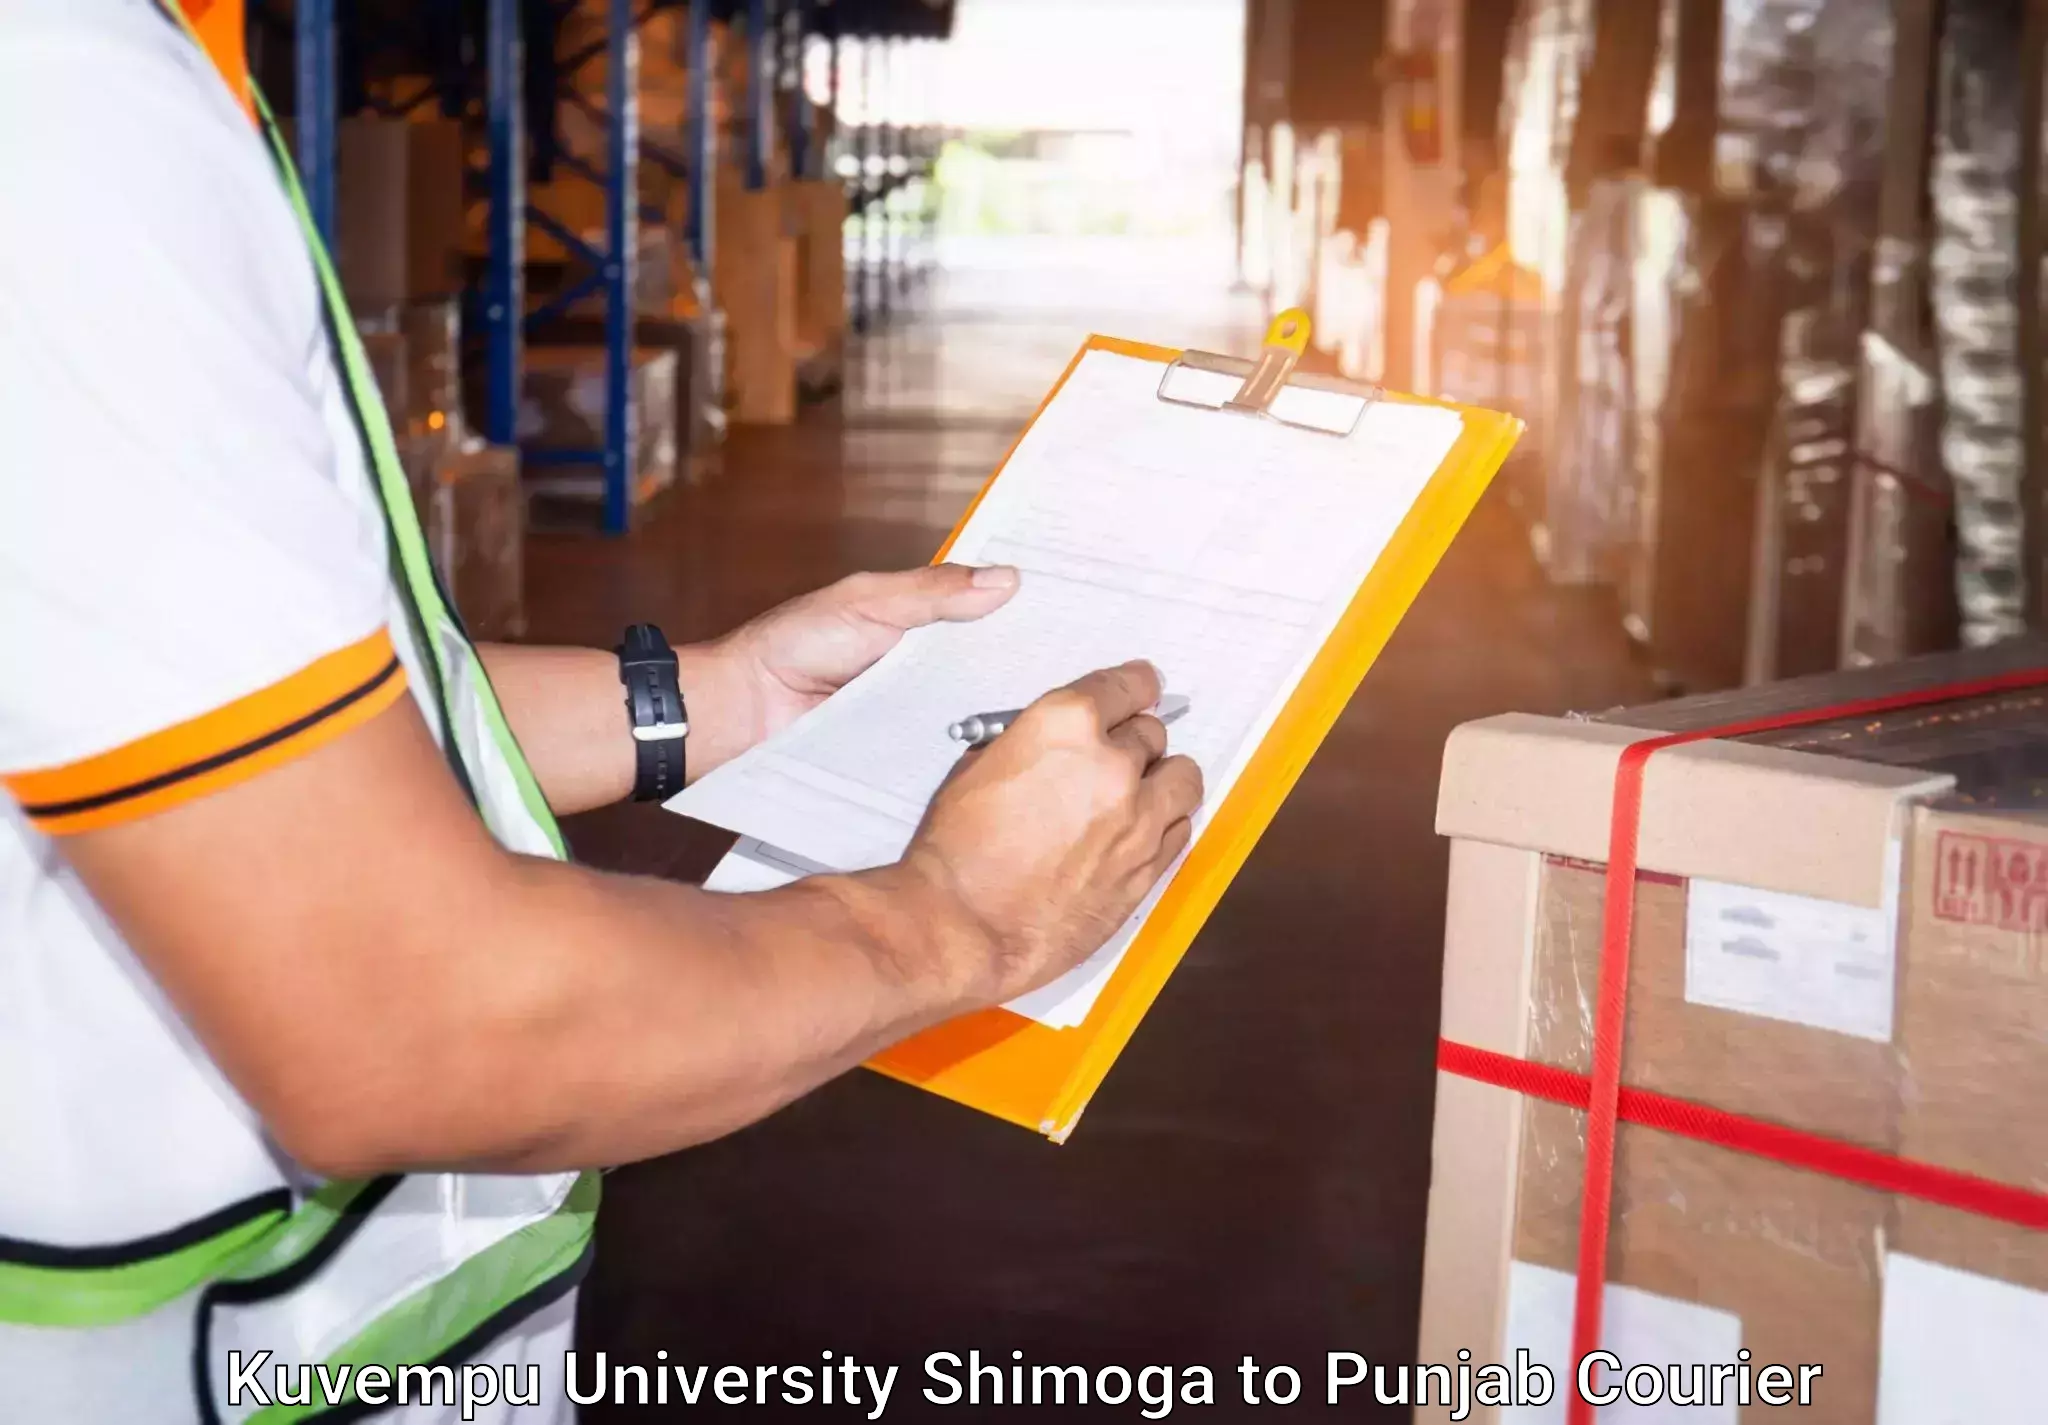 Automated luggage transport Kuvempu University Shimoga to Punjab